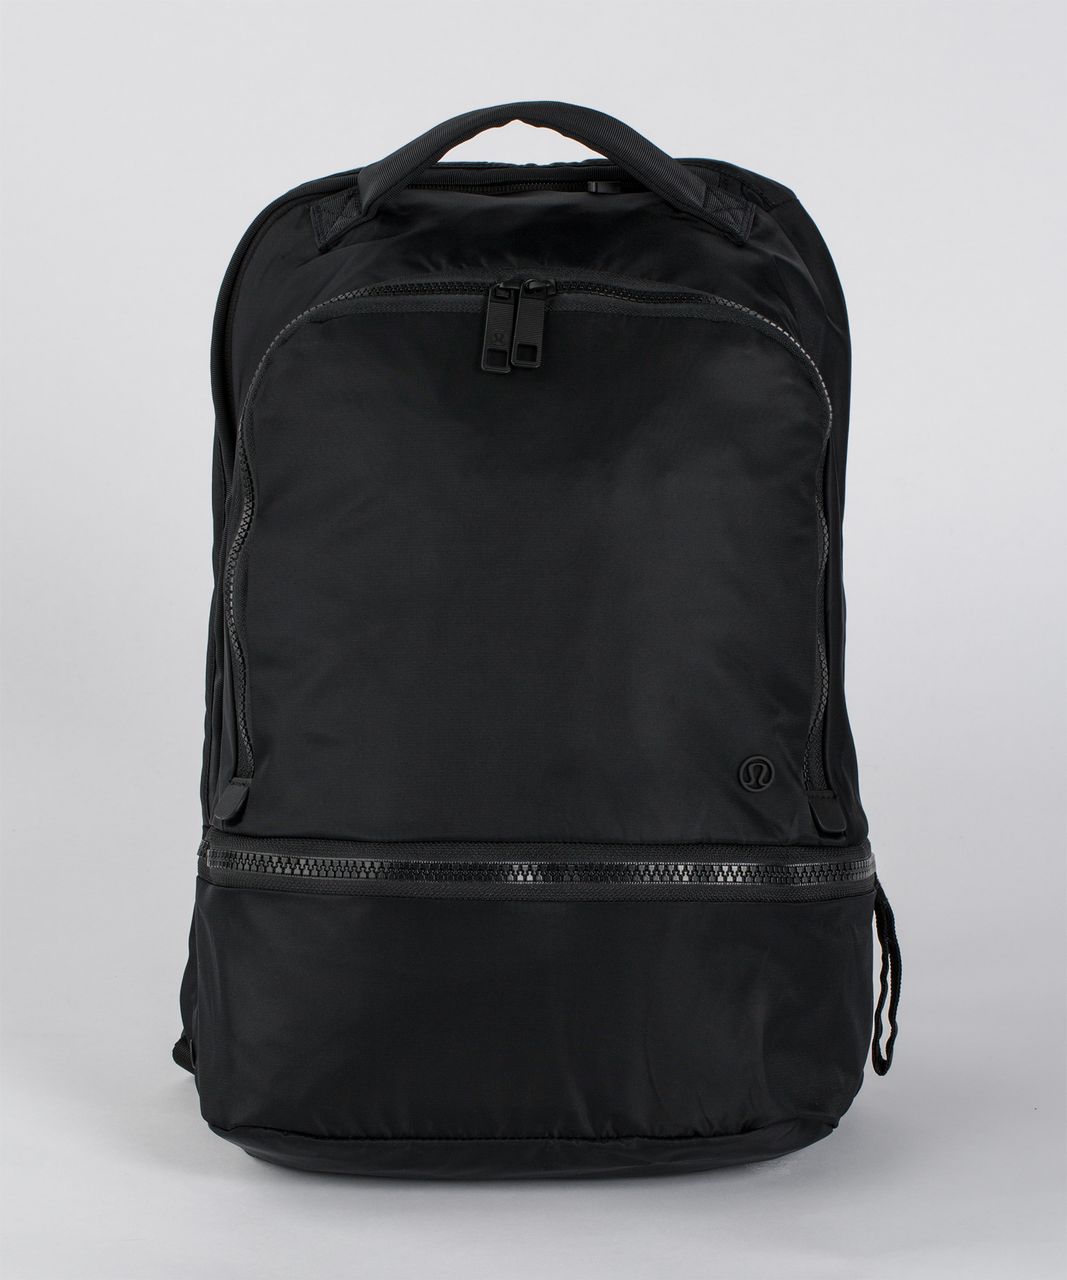 Lululemon City Adventurer Backpack (21L) - Black